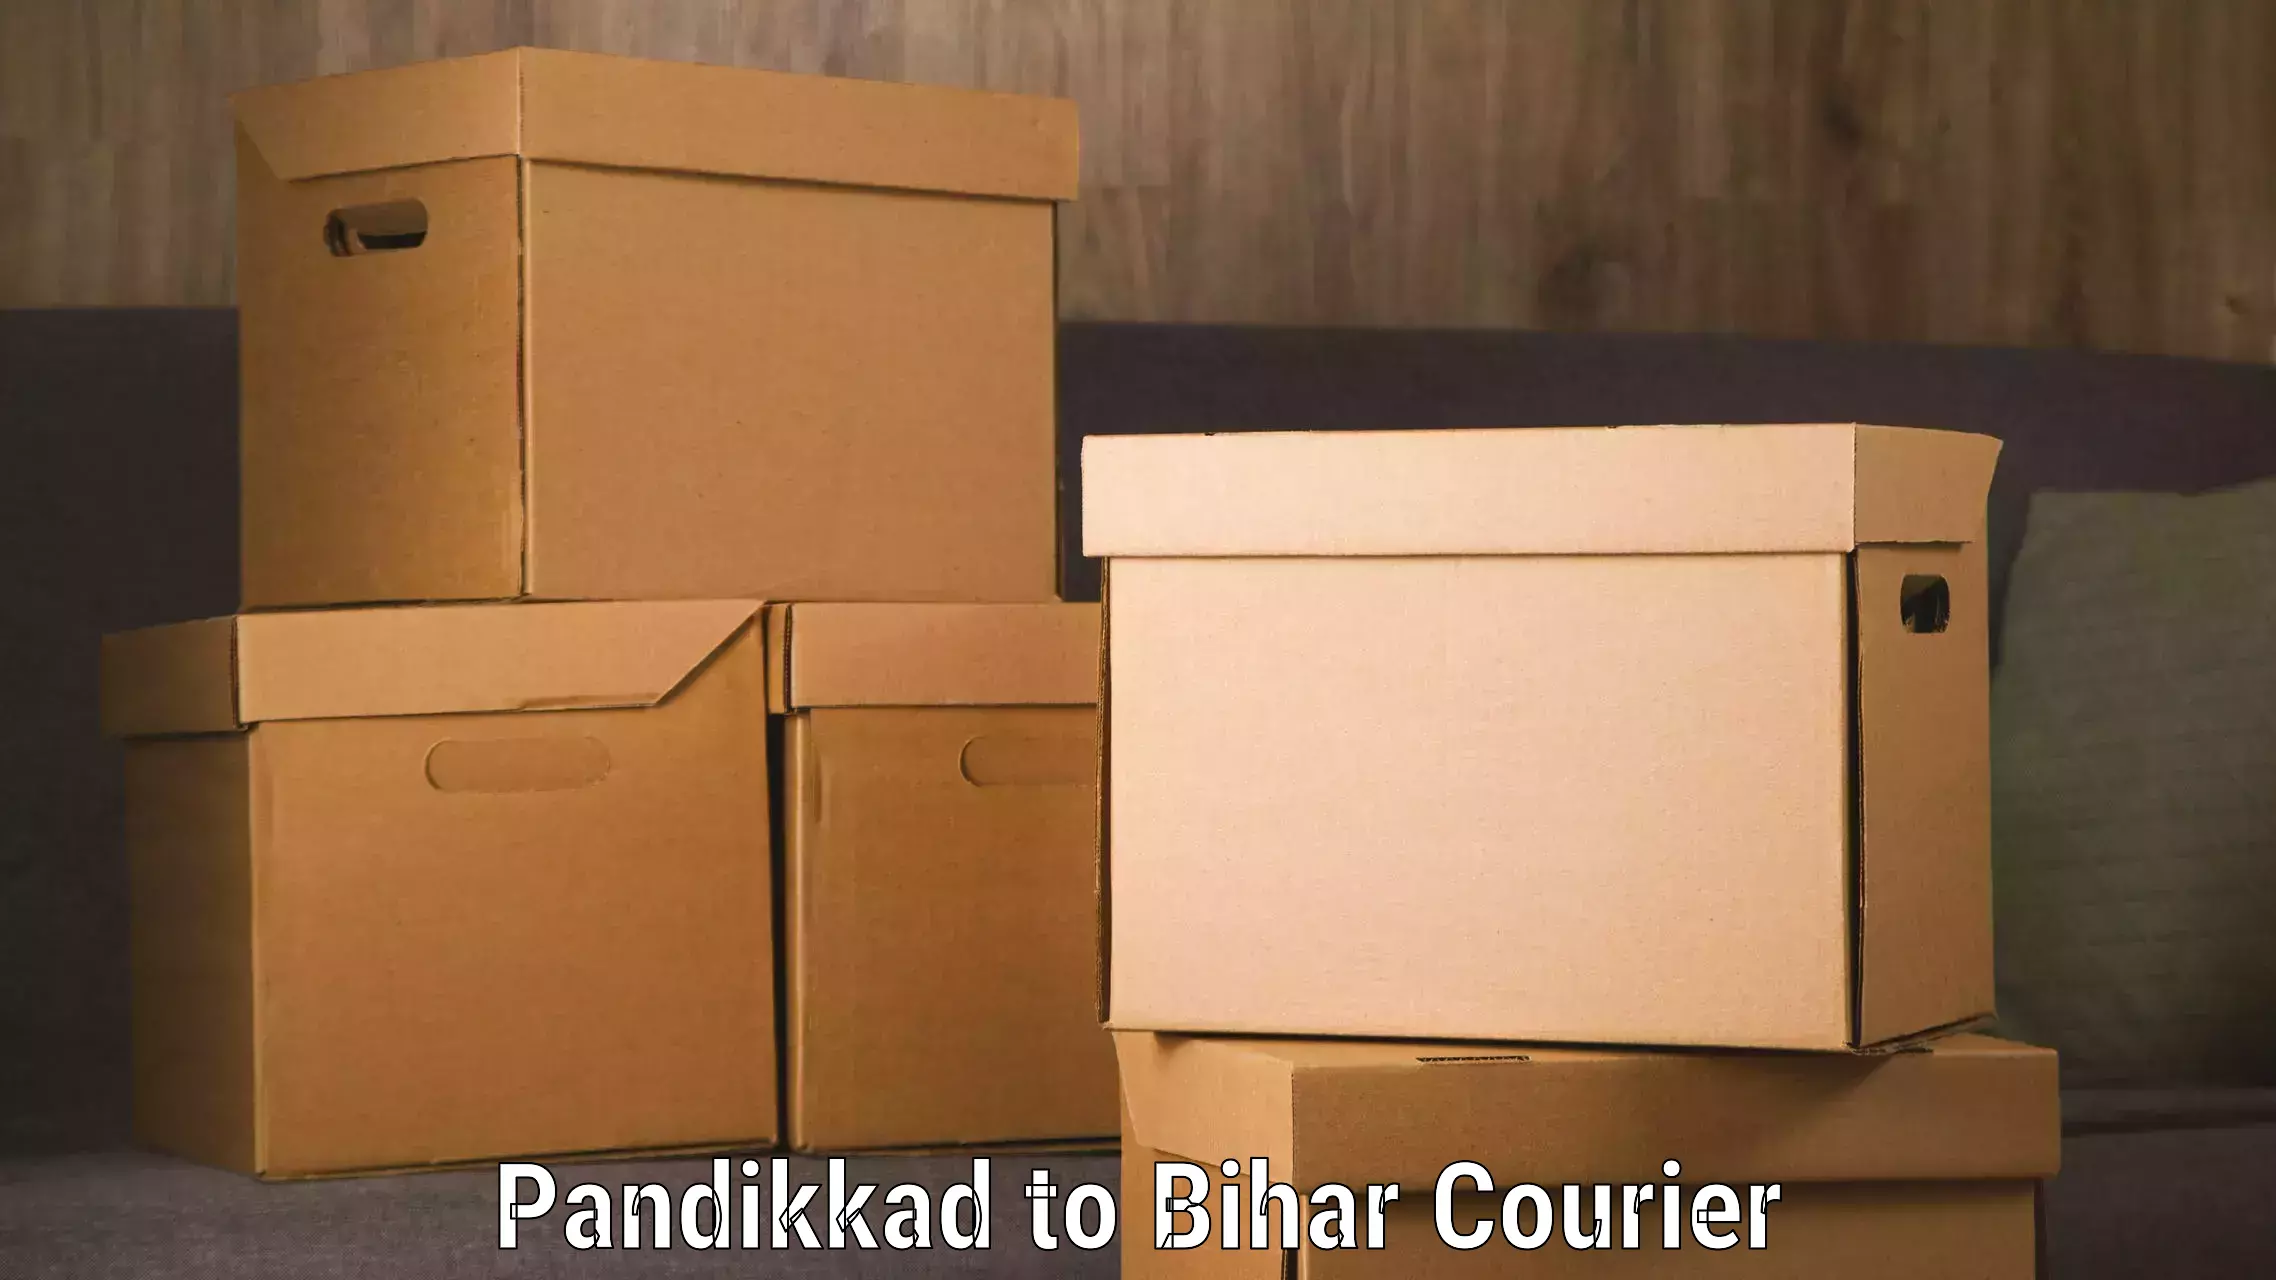 Efficient parcel tracking in Pandikkad to Bihta